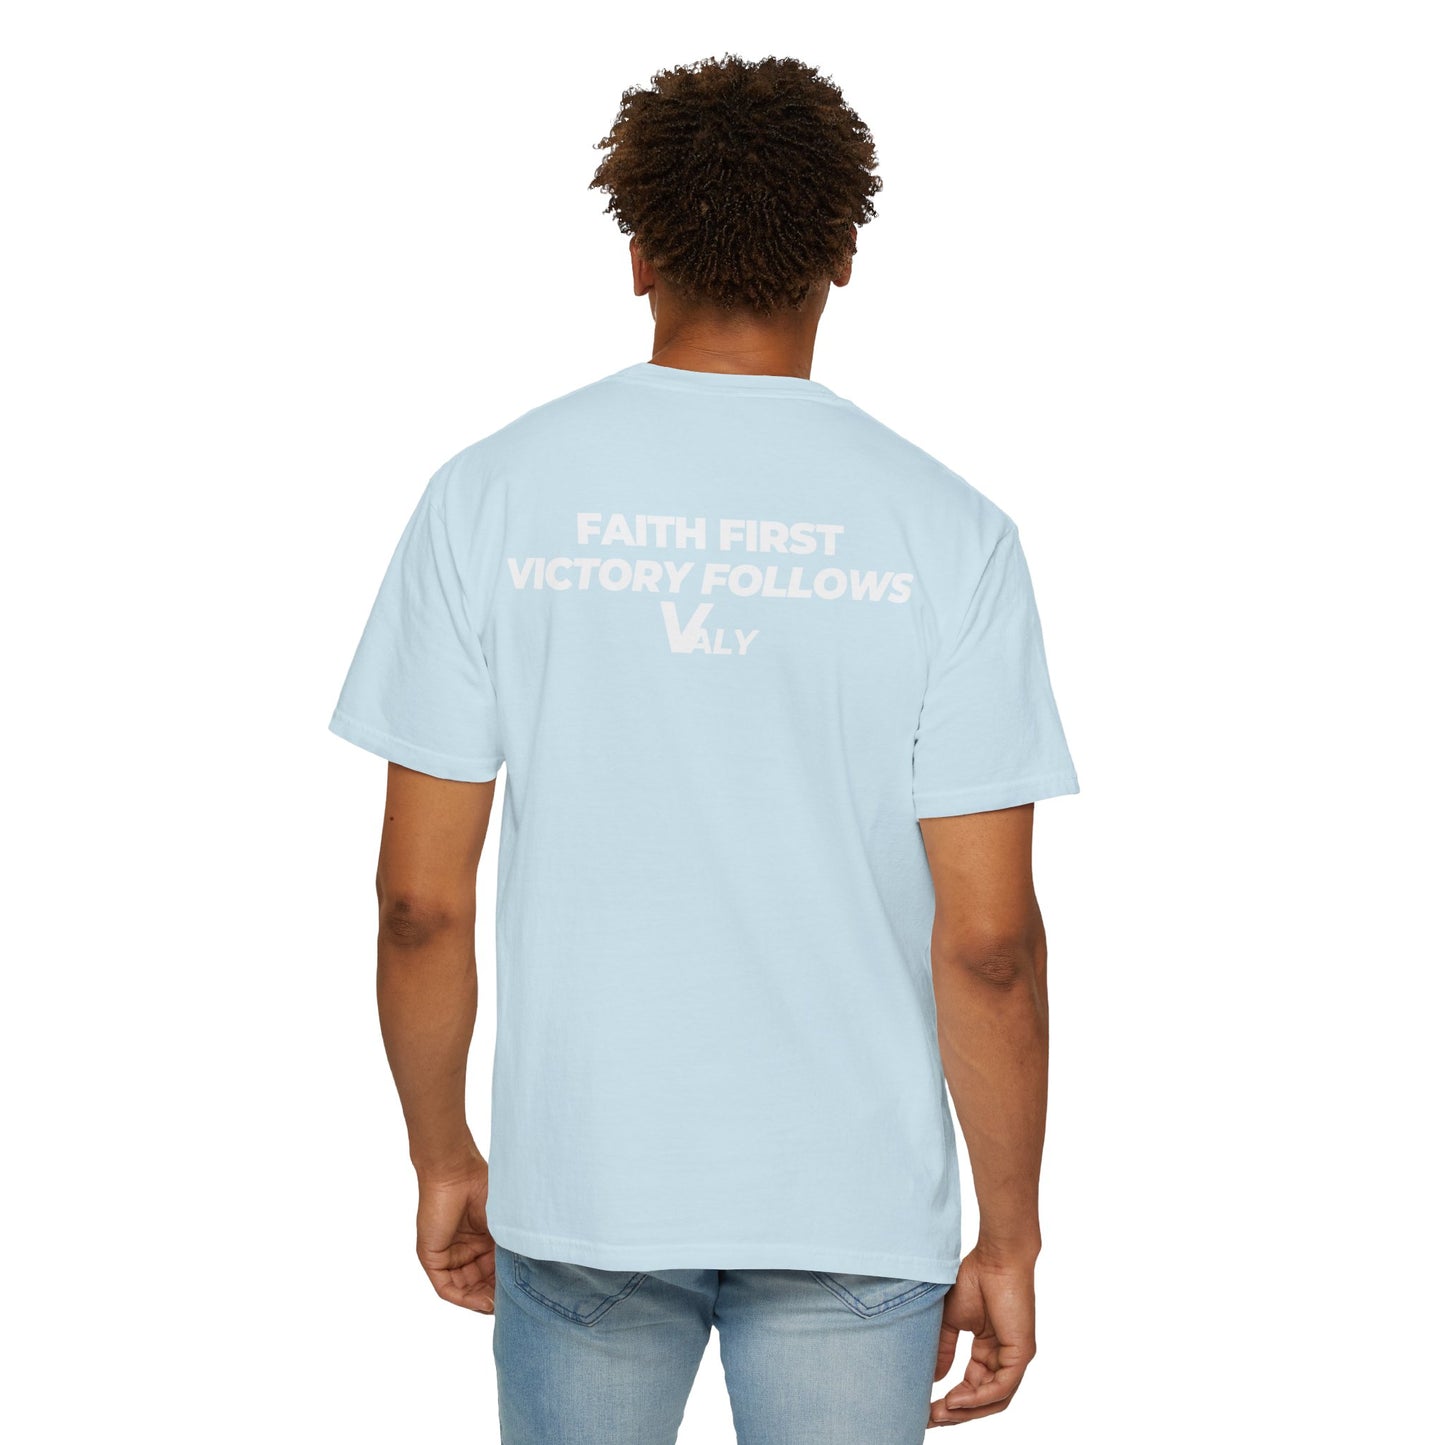 VALY Original T-Shirt - Blue